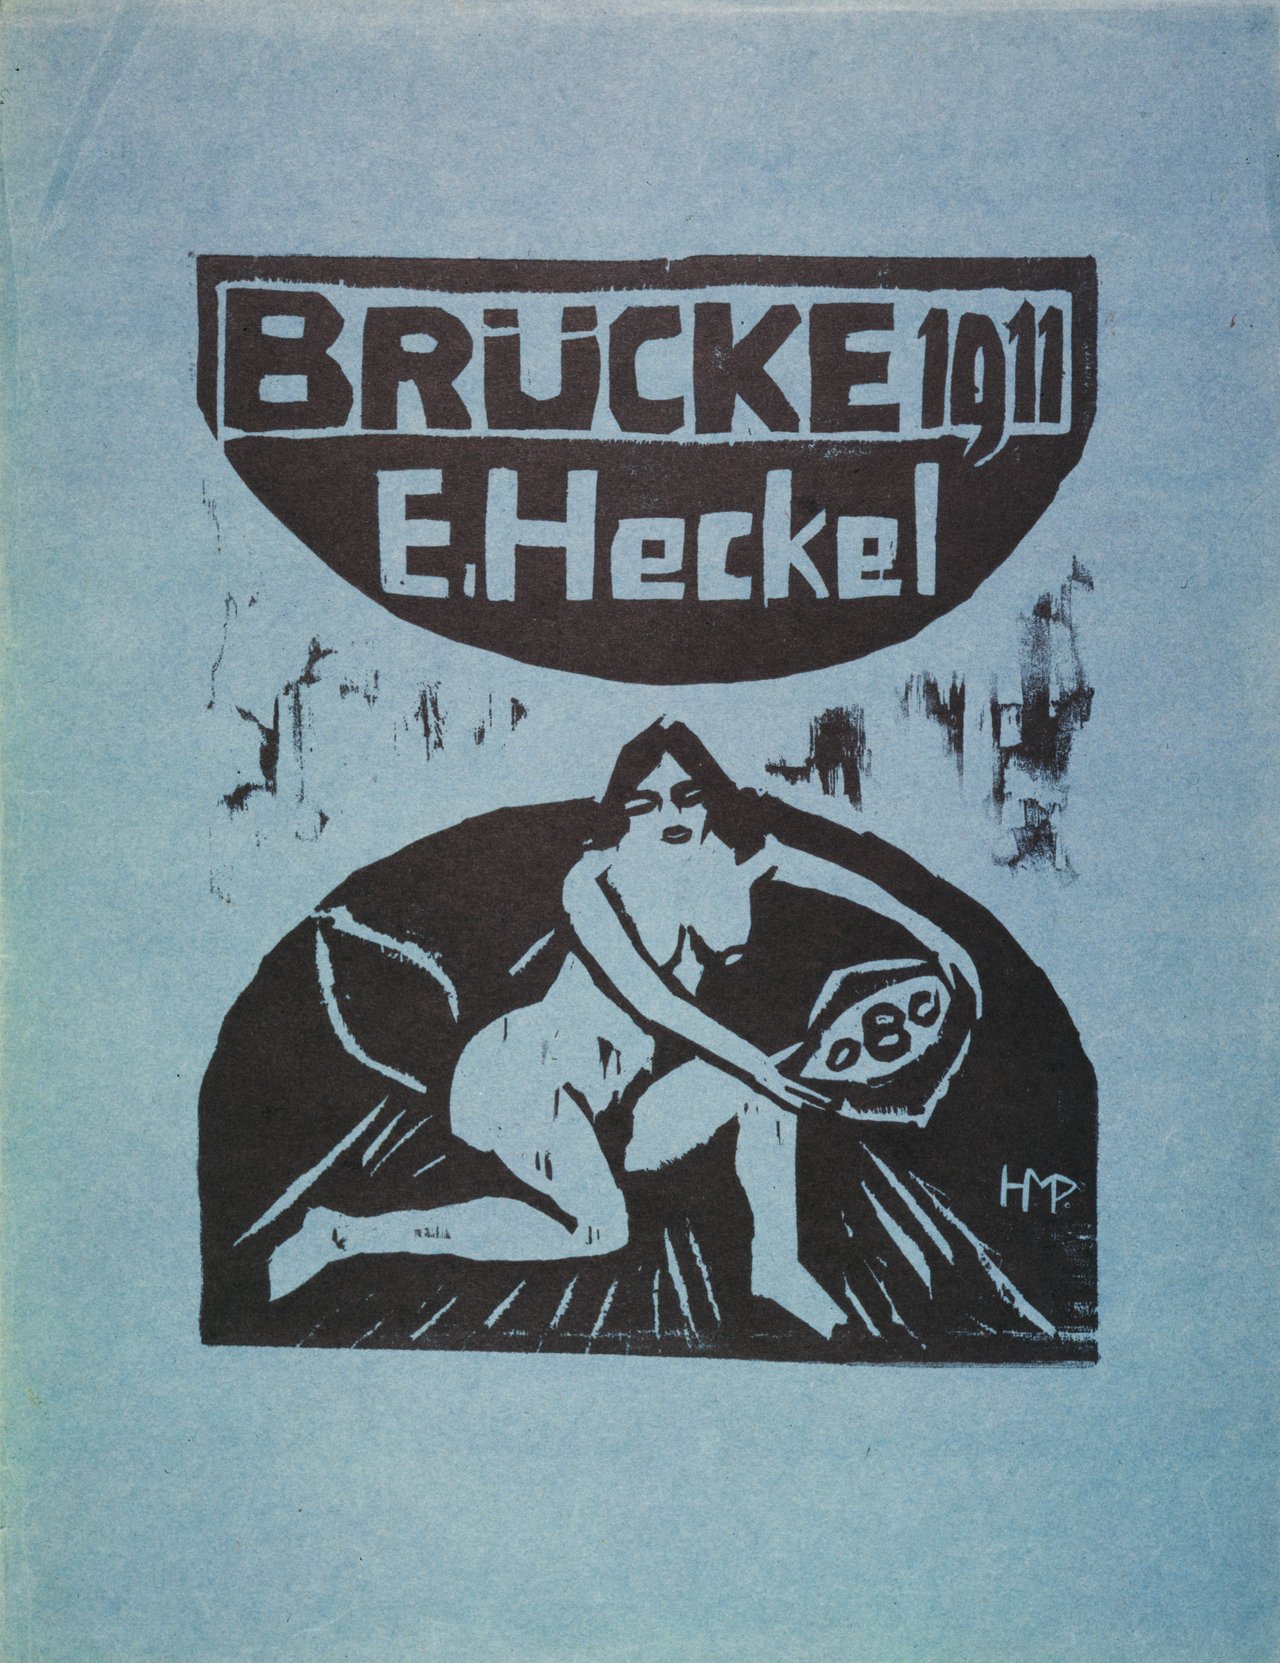 Hermann Max Pechtein (1881-1955), Titelholzschnitt der 6. Jahresmappe für Heckel, 1911, Landesmuseum Kunst & Kultur Oldenburg, Inv. 14.684